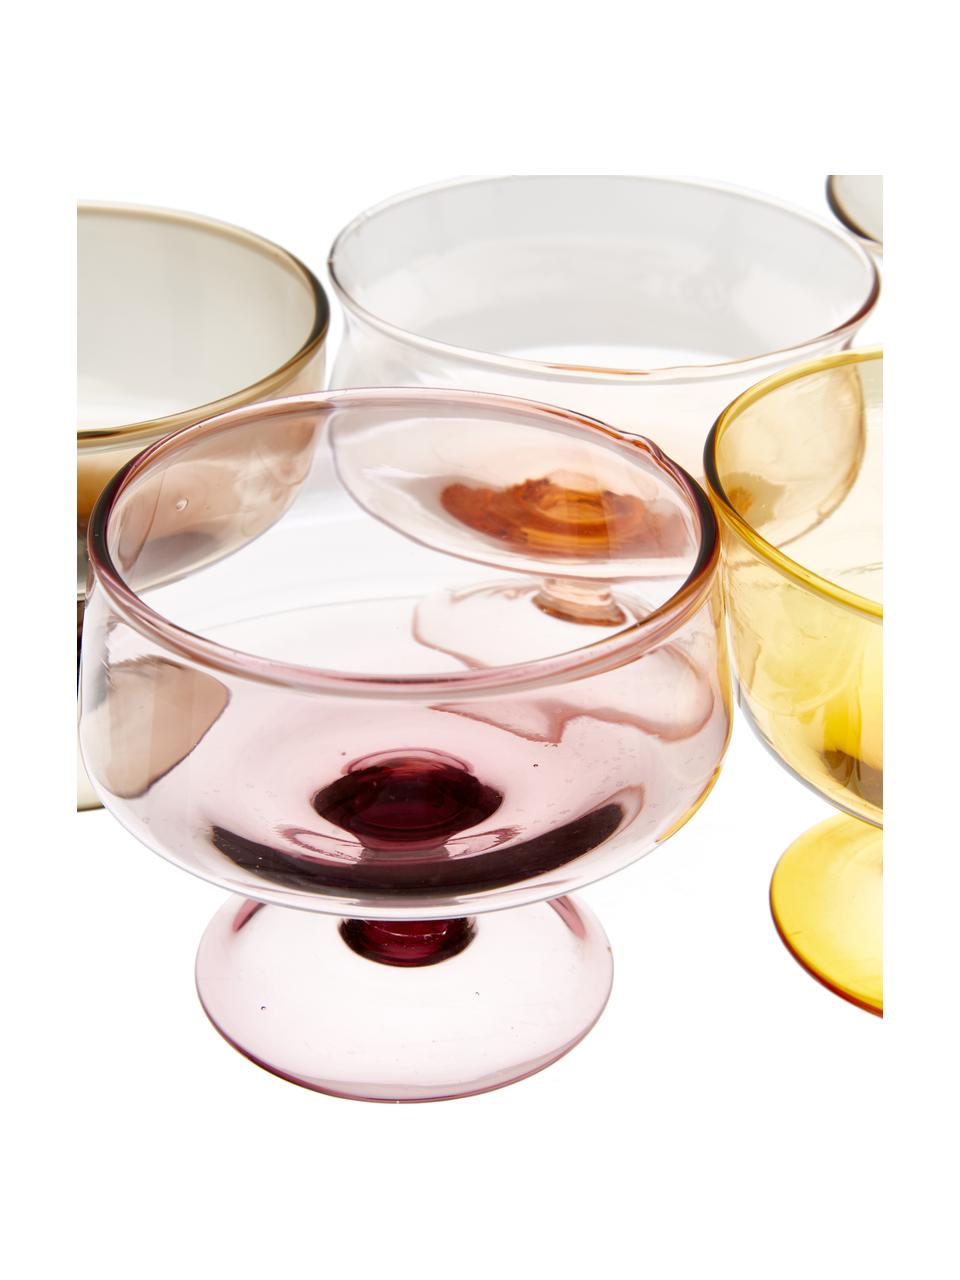 Mondgeblazen ijskom Diseguale in verschillende kleuren en vormen, 6 stuks, Mondgeblazen glas, Geeltinten, rozetinten, Ø 12 x H 8 cm, 400 ml